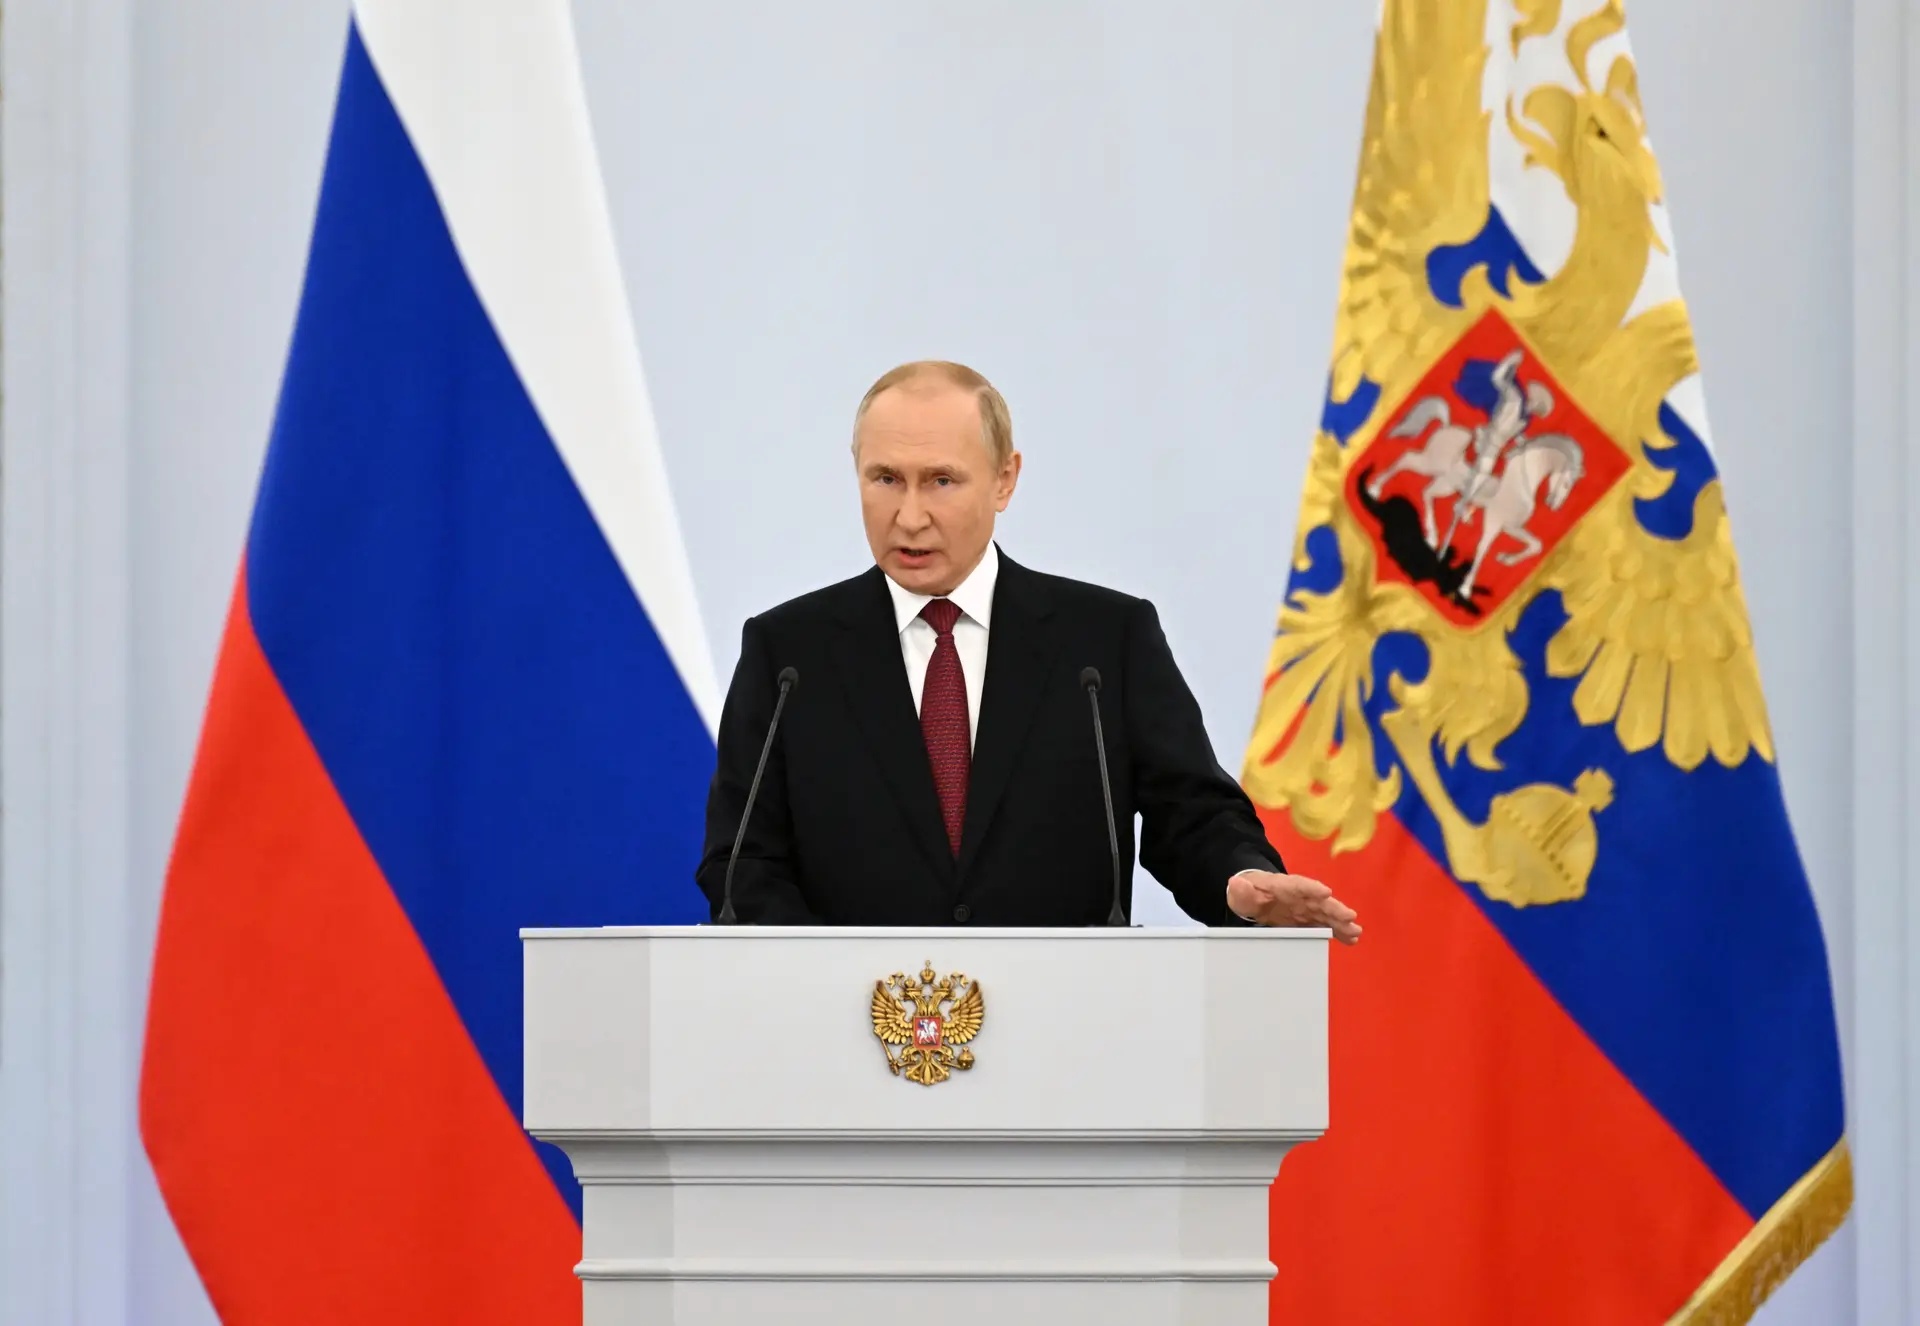 Putin acredita que guerra na Ucrânia “vai beneficiar a Rússia” e acusa Ocidente de escalar conflito